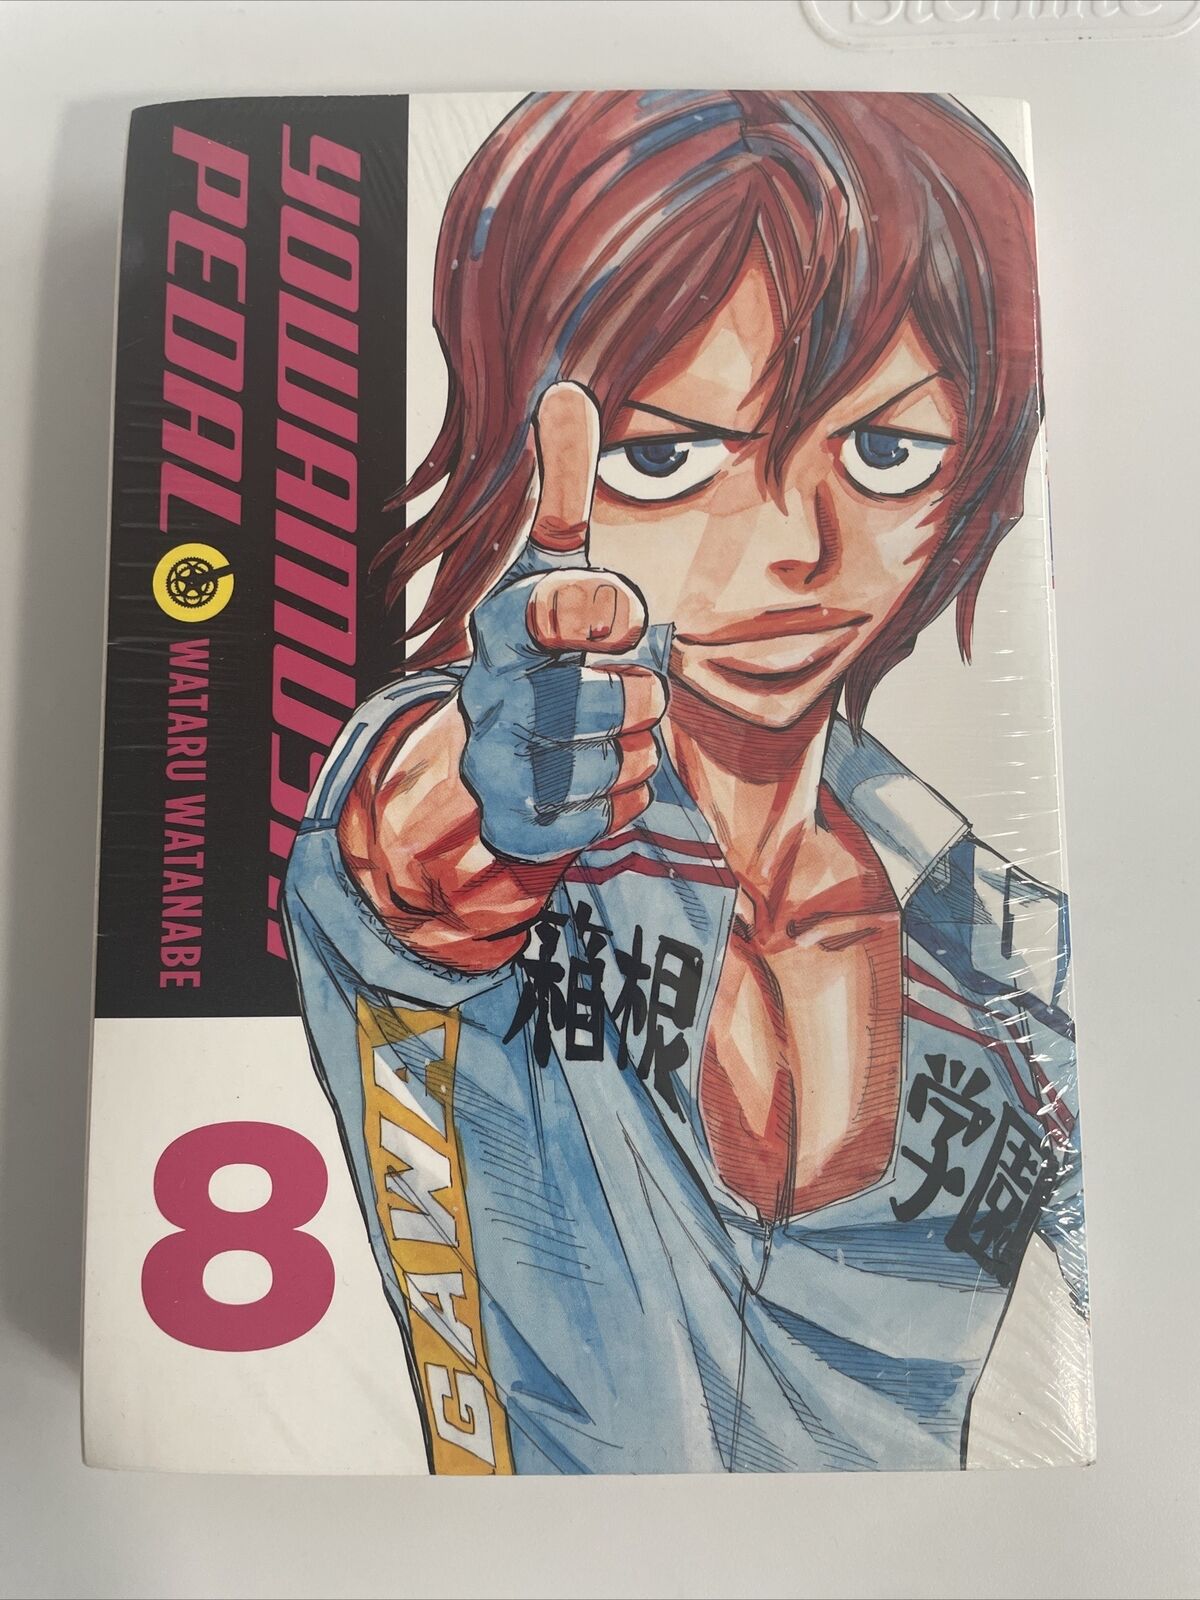 Yowamushi Pedal - Volume 8 - Manga - English - Wataru Watanabe  - Yen Press